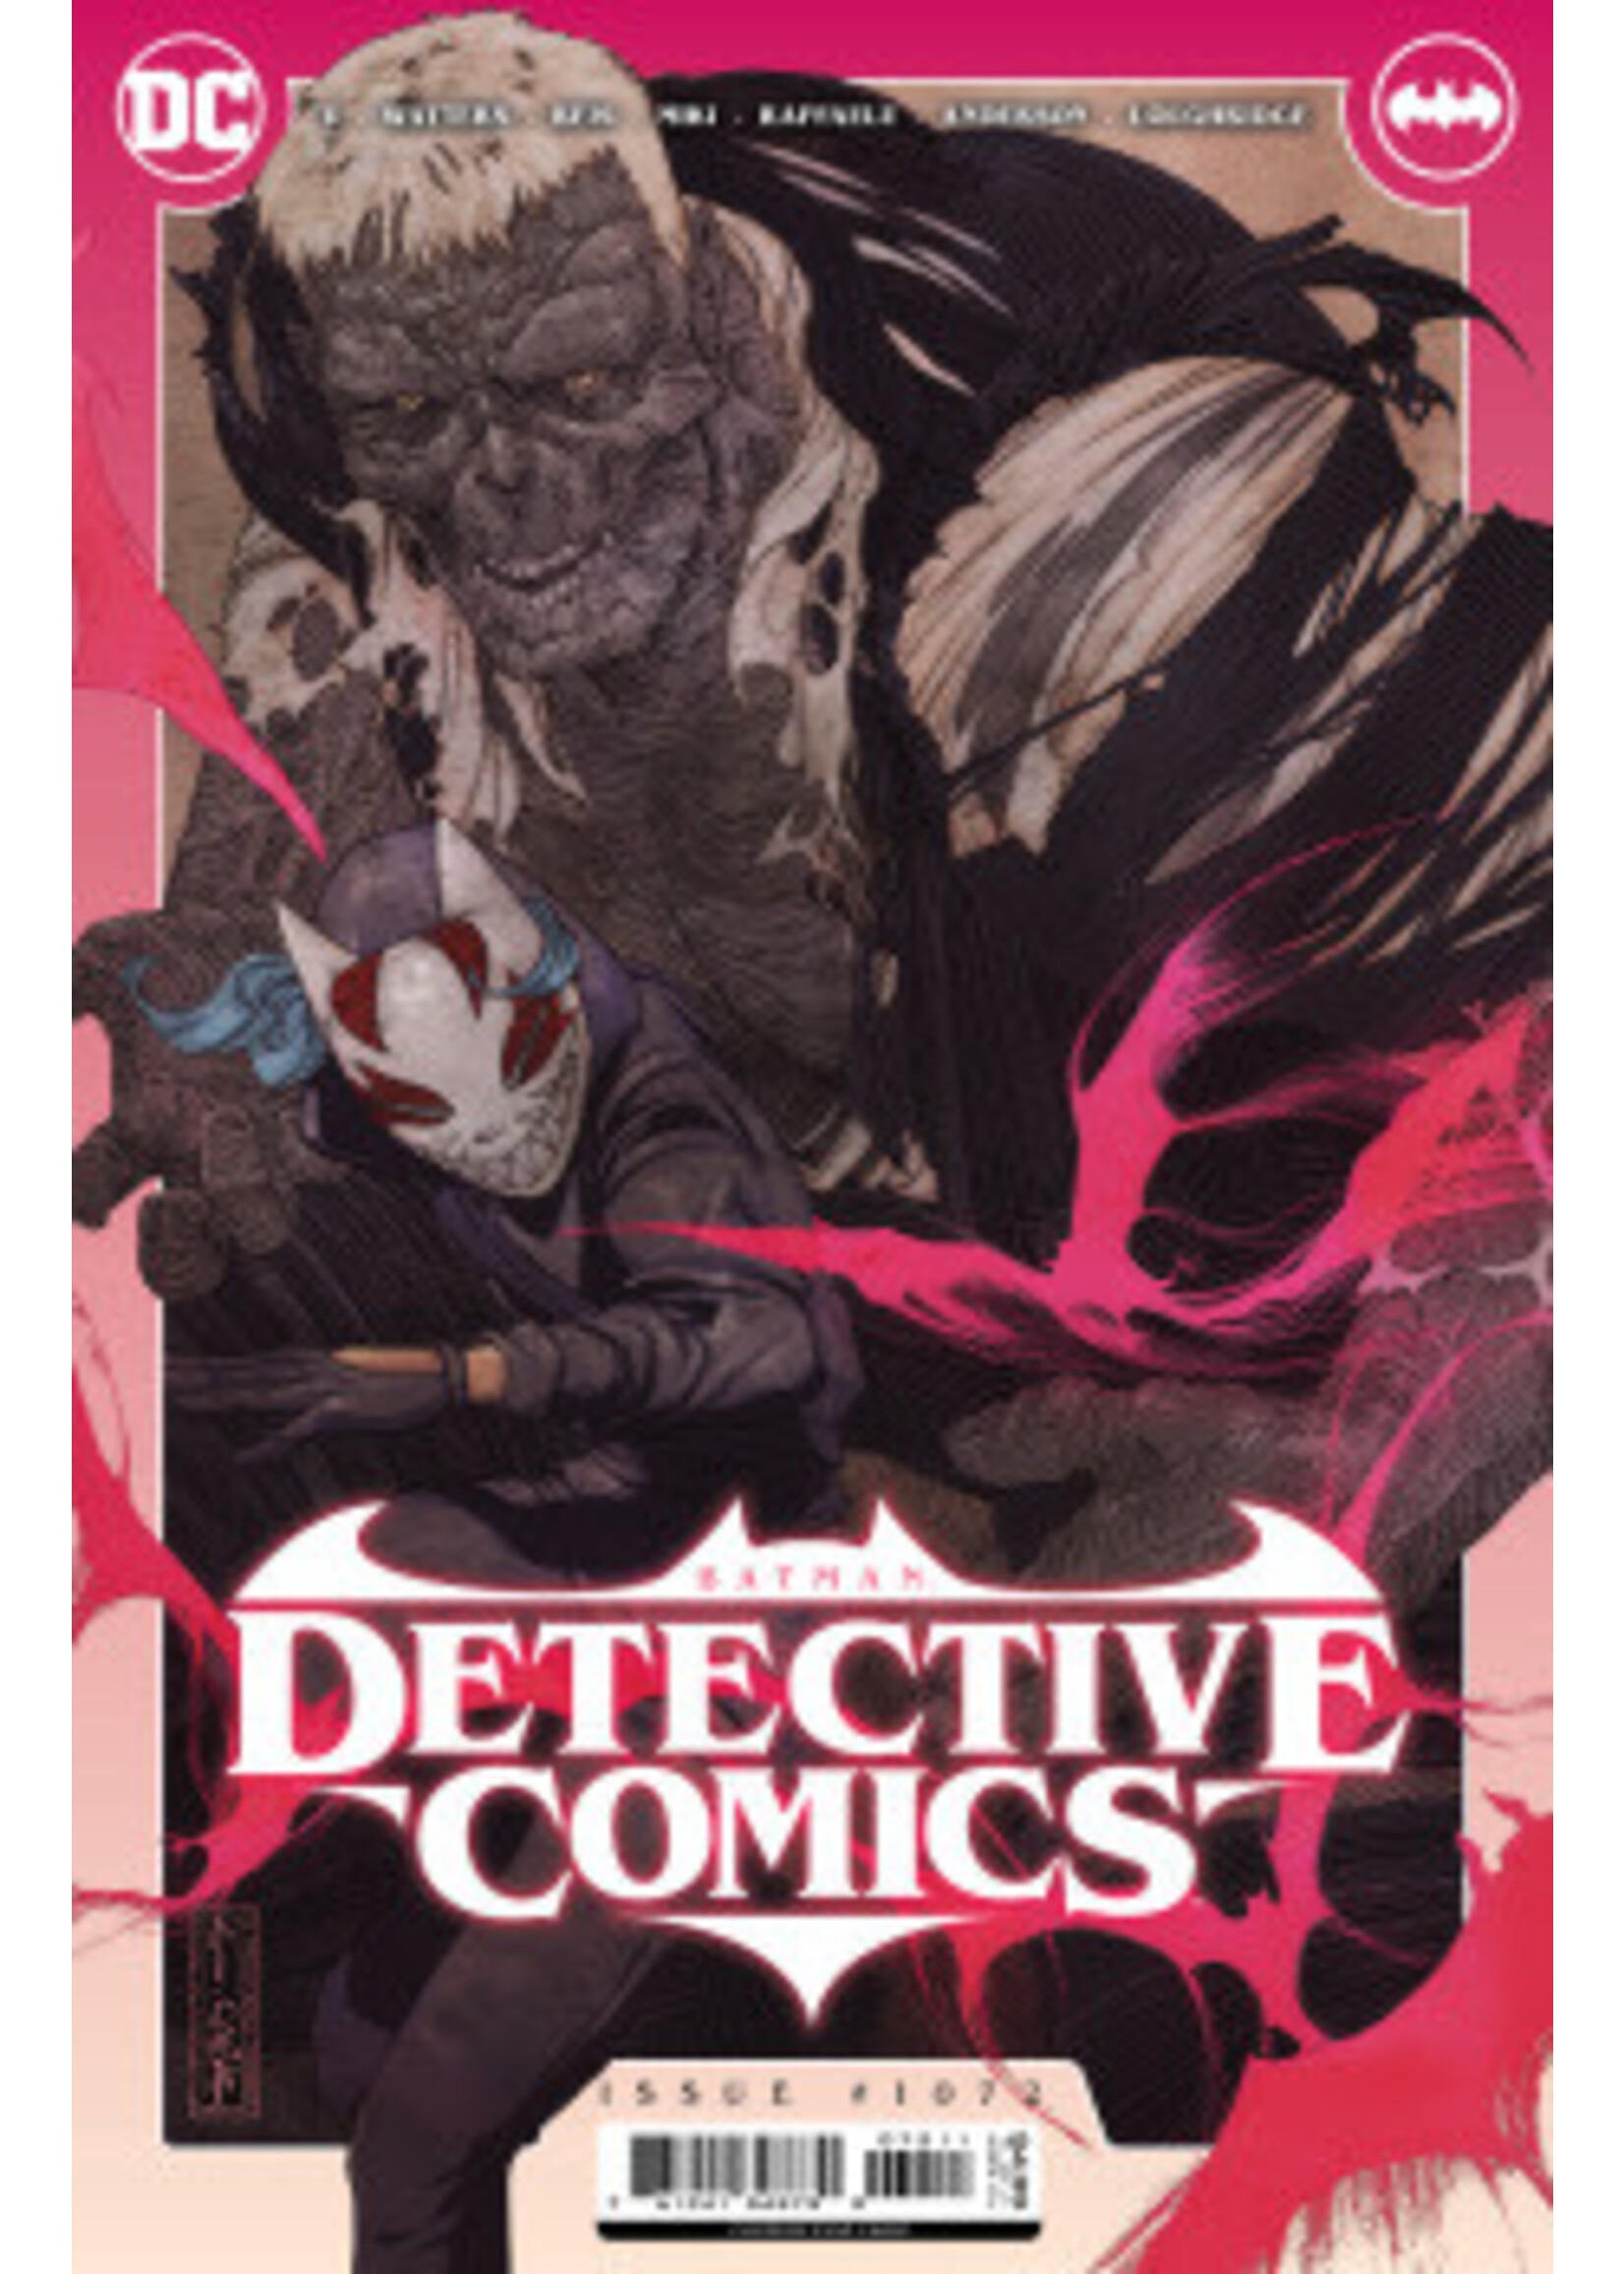 DC COMICS DETECTIVE COMICS #1072